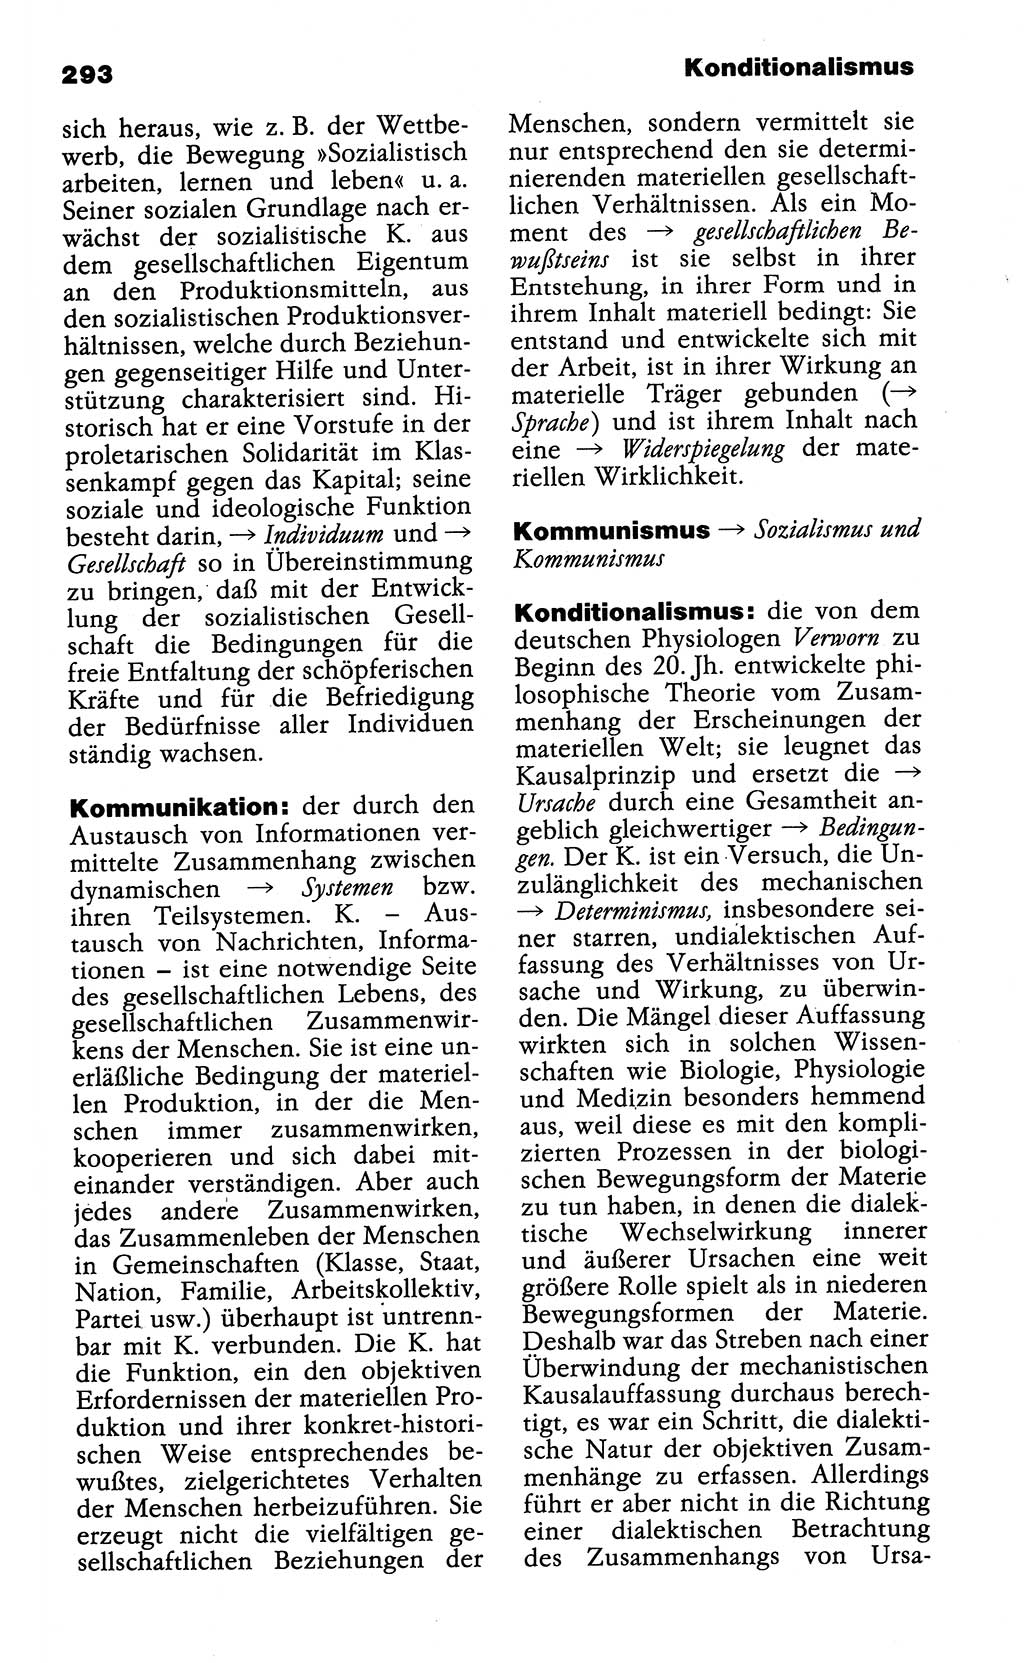 Wörterbuch der marxistisch-leninistischen Philosophie [Deutsche Demokratische Republik (DDR)] 1985, Seite 293 (Wb. ML Phil. DDR 1985, S. 293)